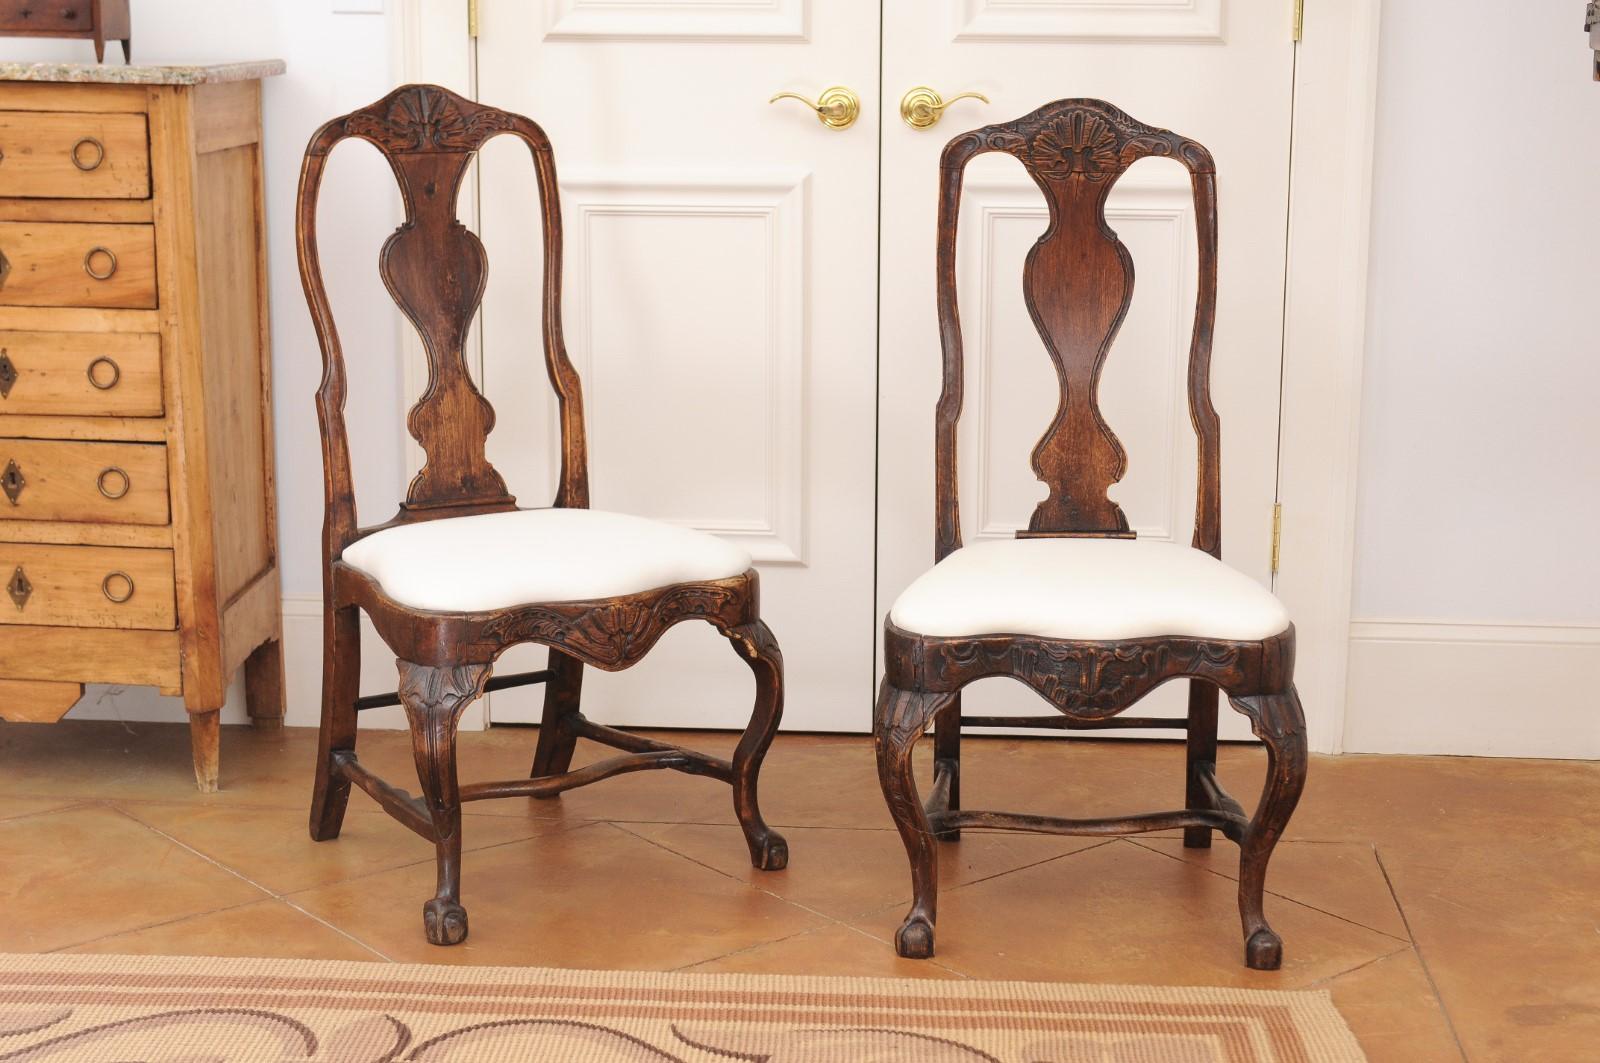 Paire de chaises d'appoint en noyer de la période rococo suédoise du XVIIIe siècle, avec tapisserie et pieds cabriole. Créée en Suède au cours du XVIIIe siècle, cette paire de chaises rococo se caractérise par un dossier incurvé et percé avec une